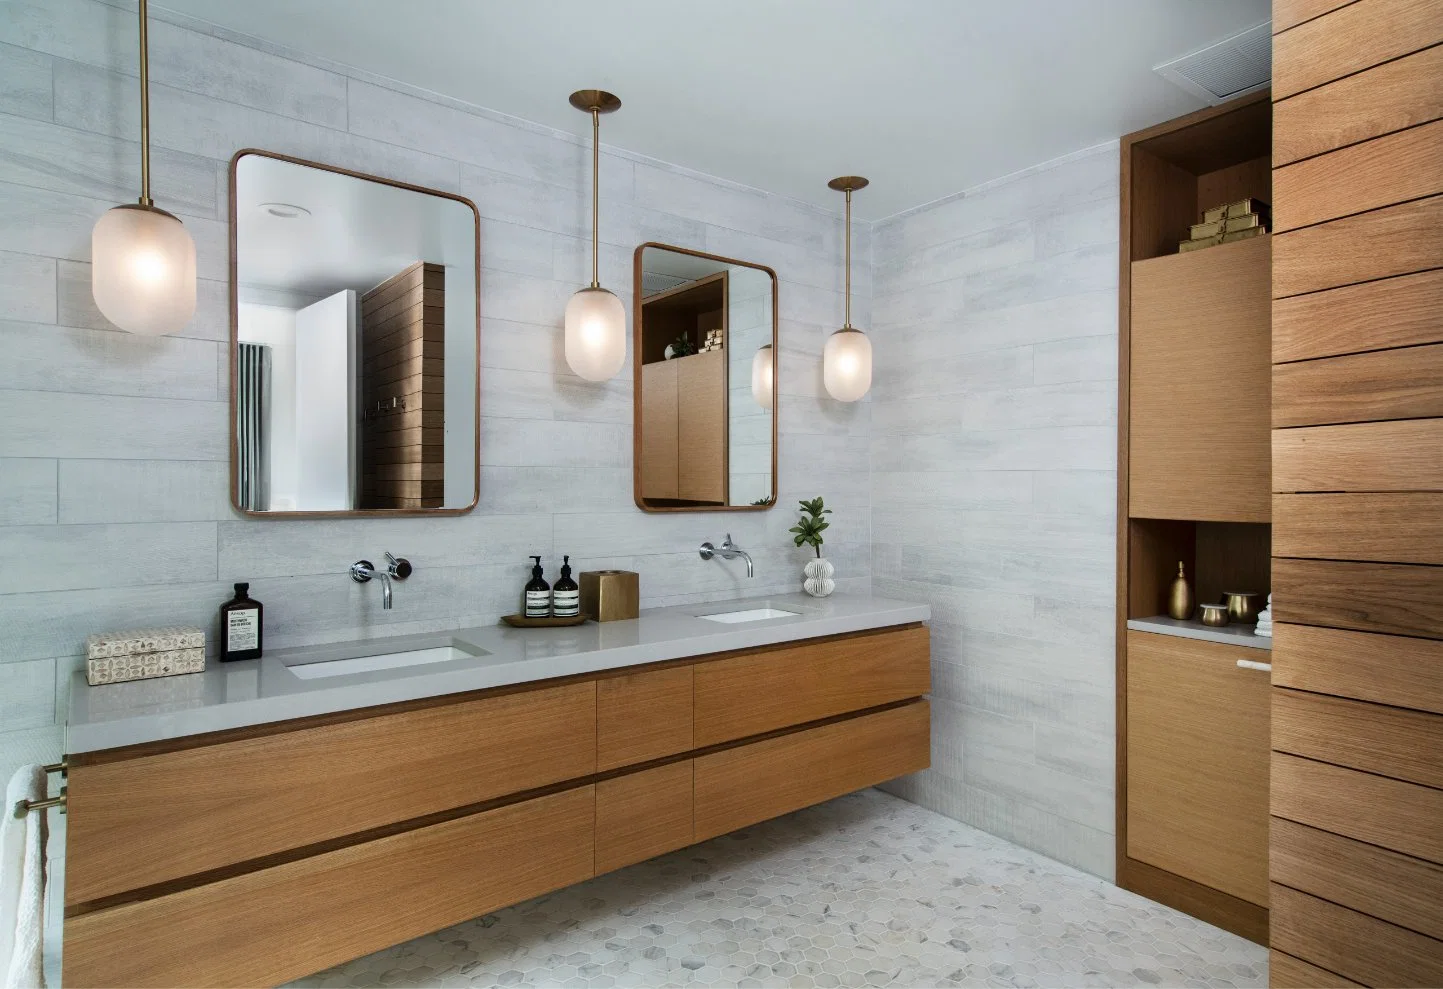 Primera gran trastero gabinete de vanidades de baño con espejo